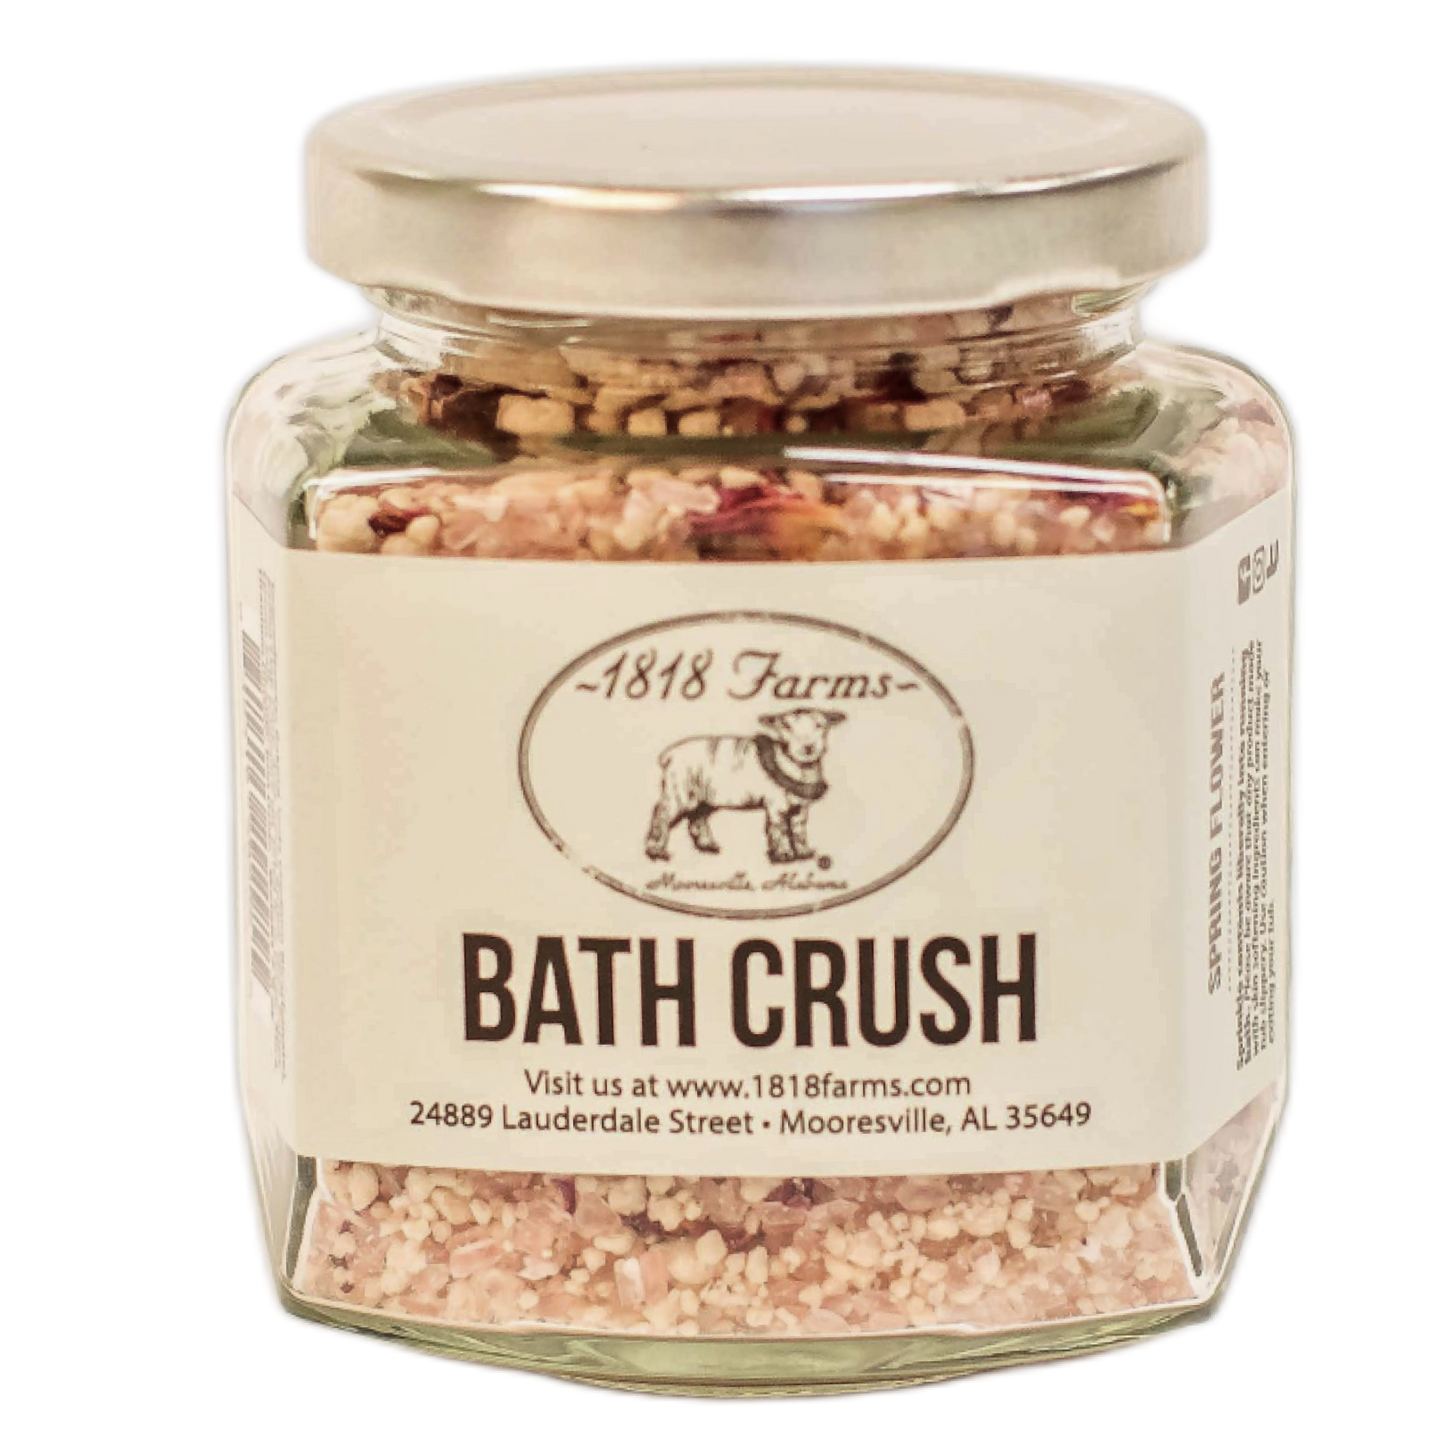 Bath Crush Bath Teas & Truffles 1818 Farms Spring Flower  